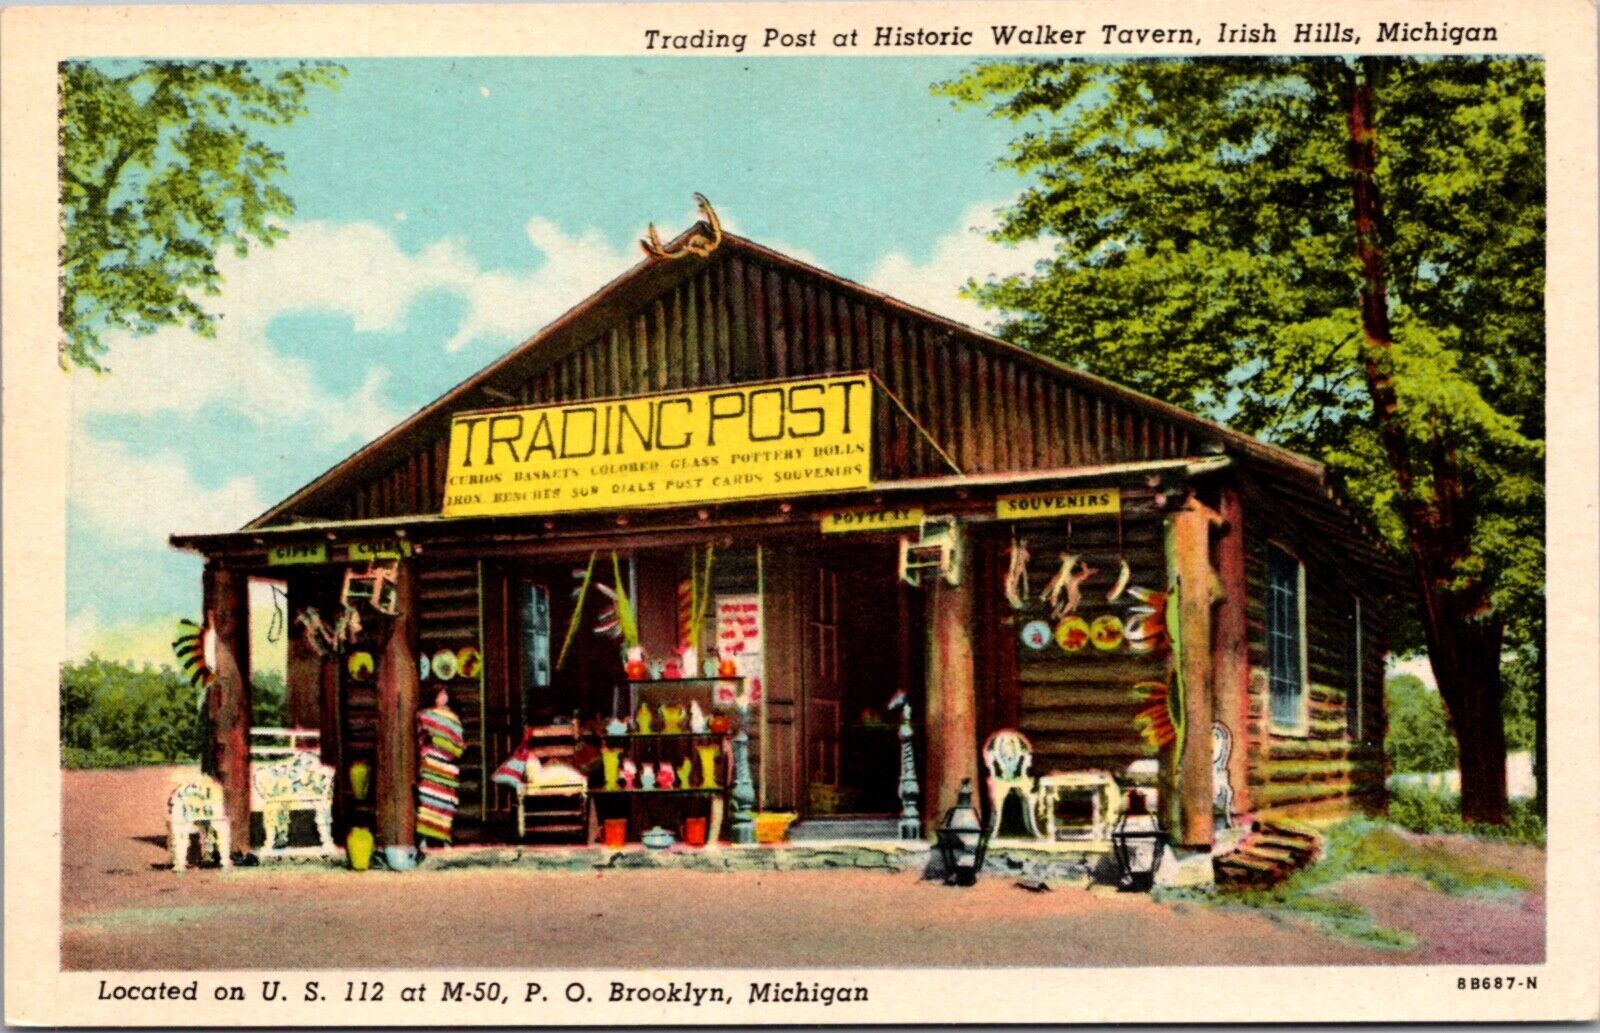 Postcard Trading Post at Historic Walker Tavern US 112 in Irish Hills, Michigan